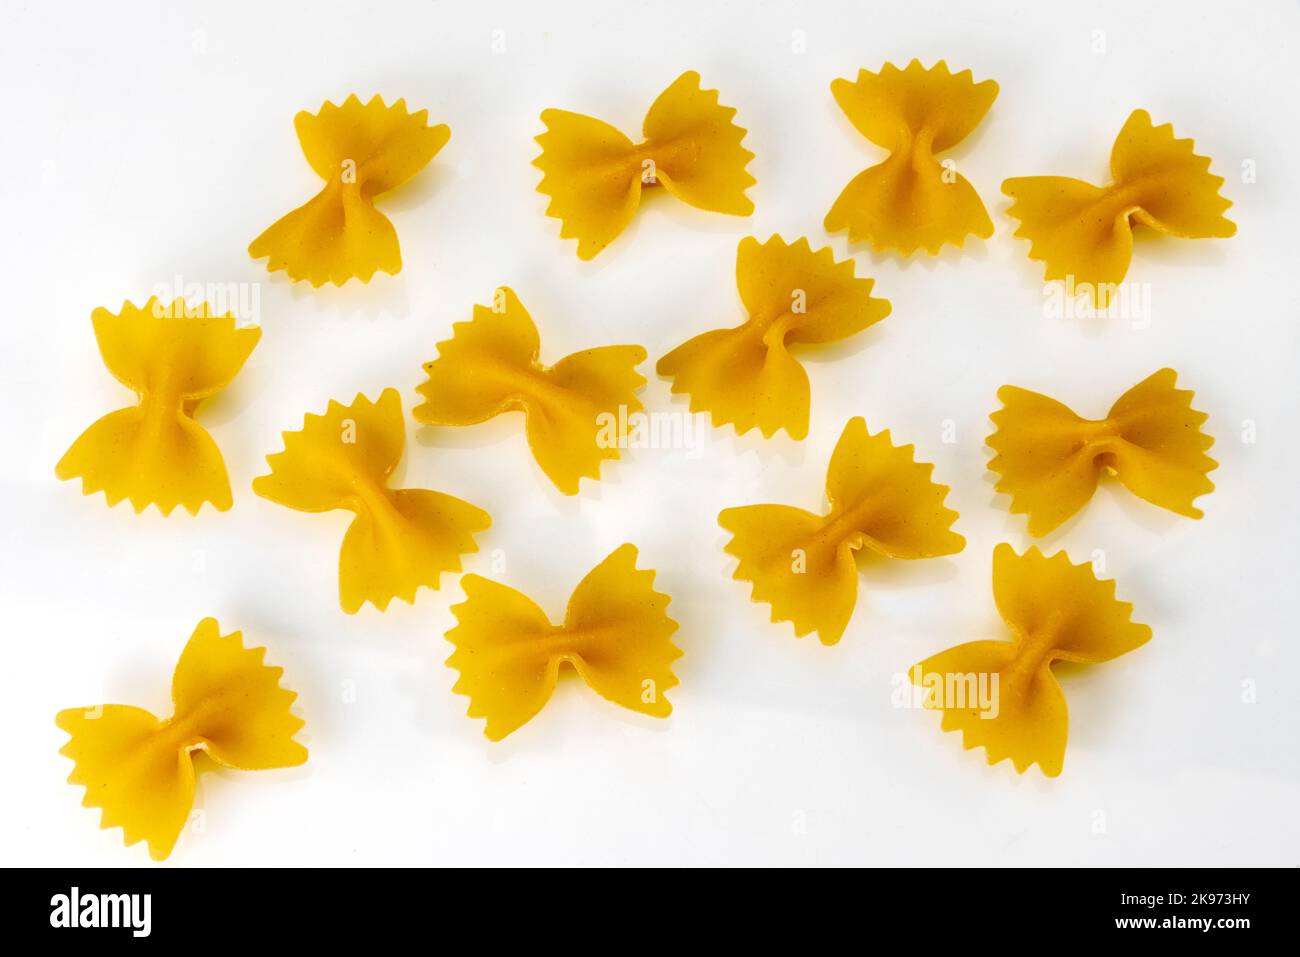 Pâtes italiennes appelées farfalle, macaroni en forme de papillons isolés sur blanc, chemin d'écrêtage Banque D'Images